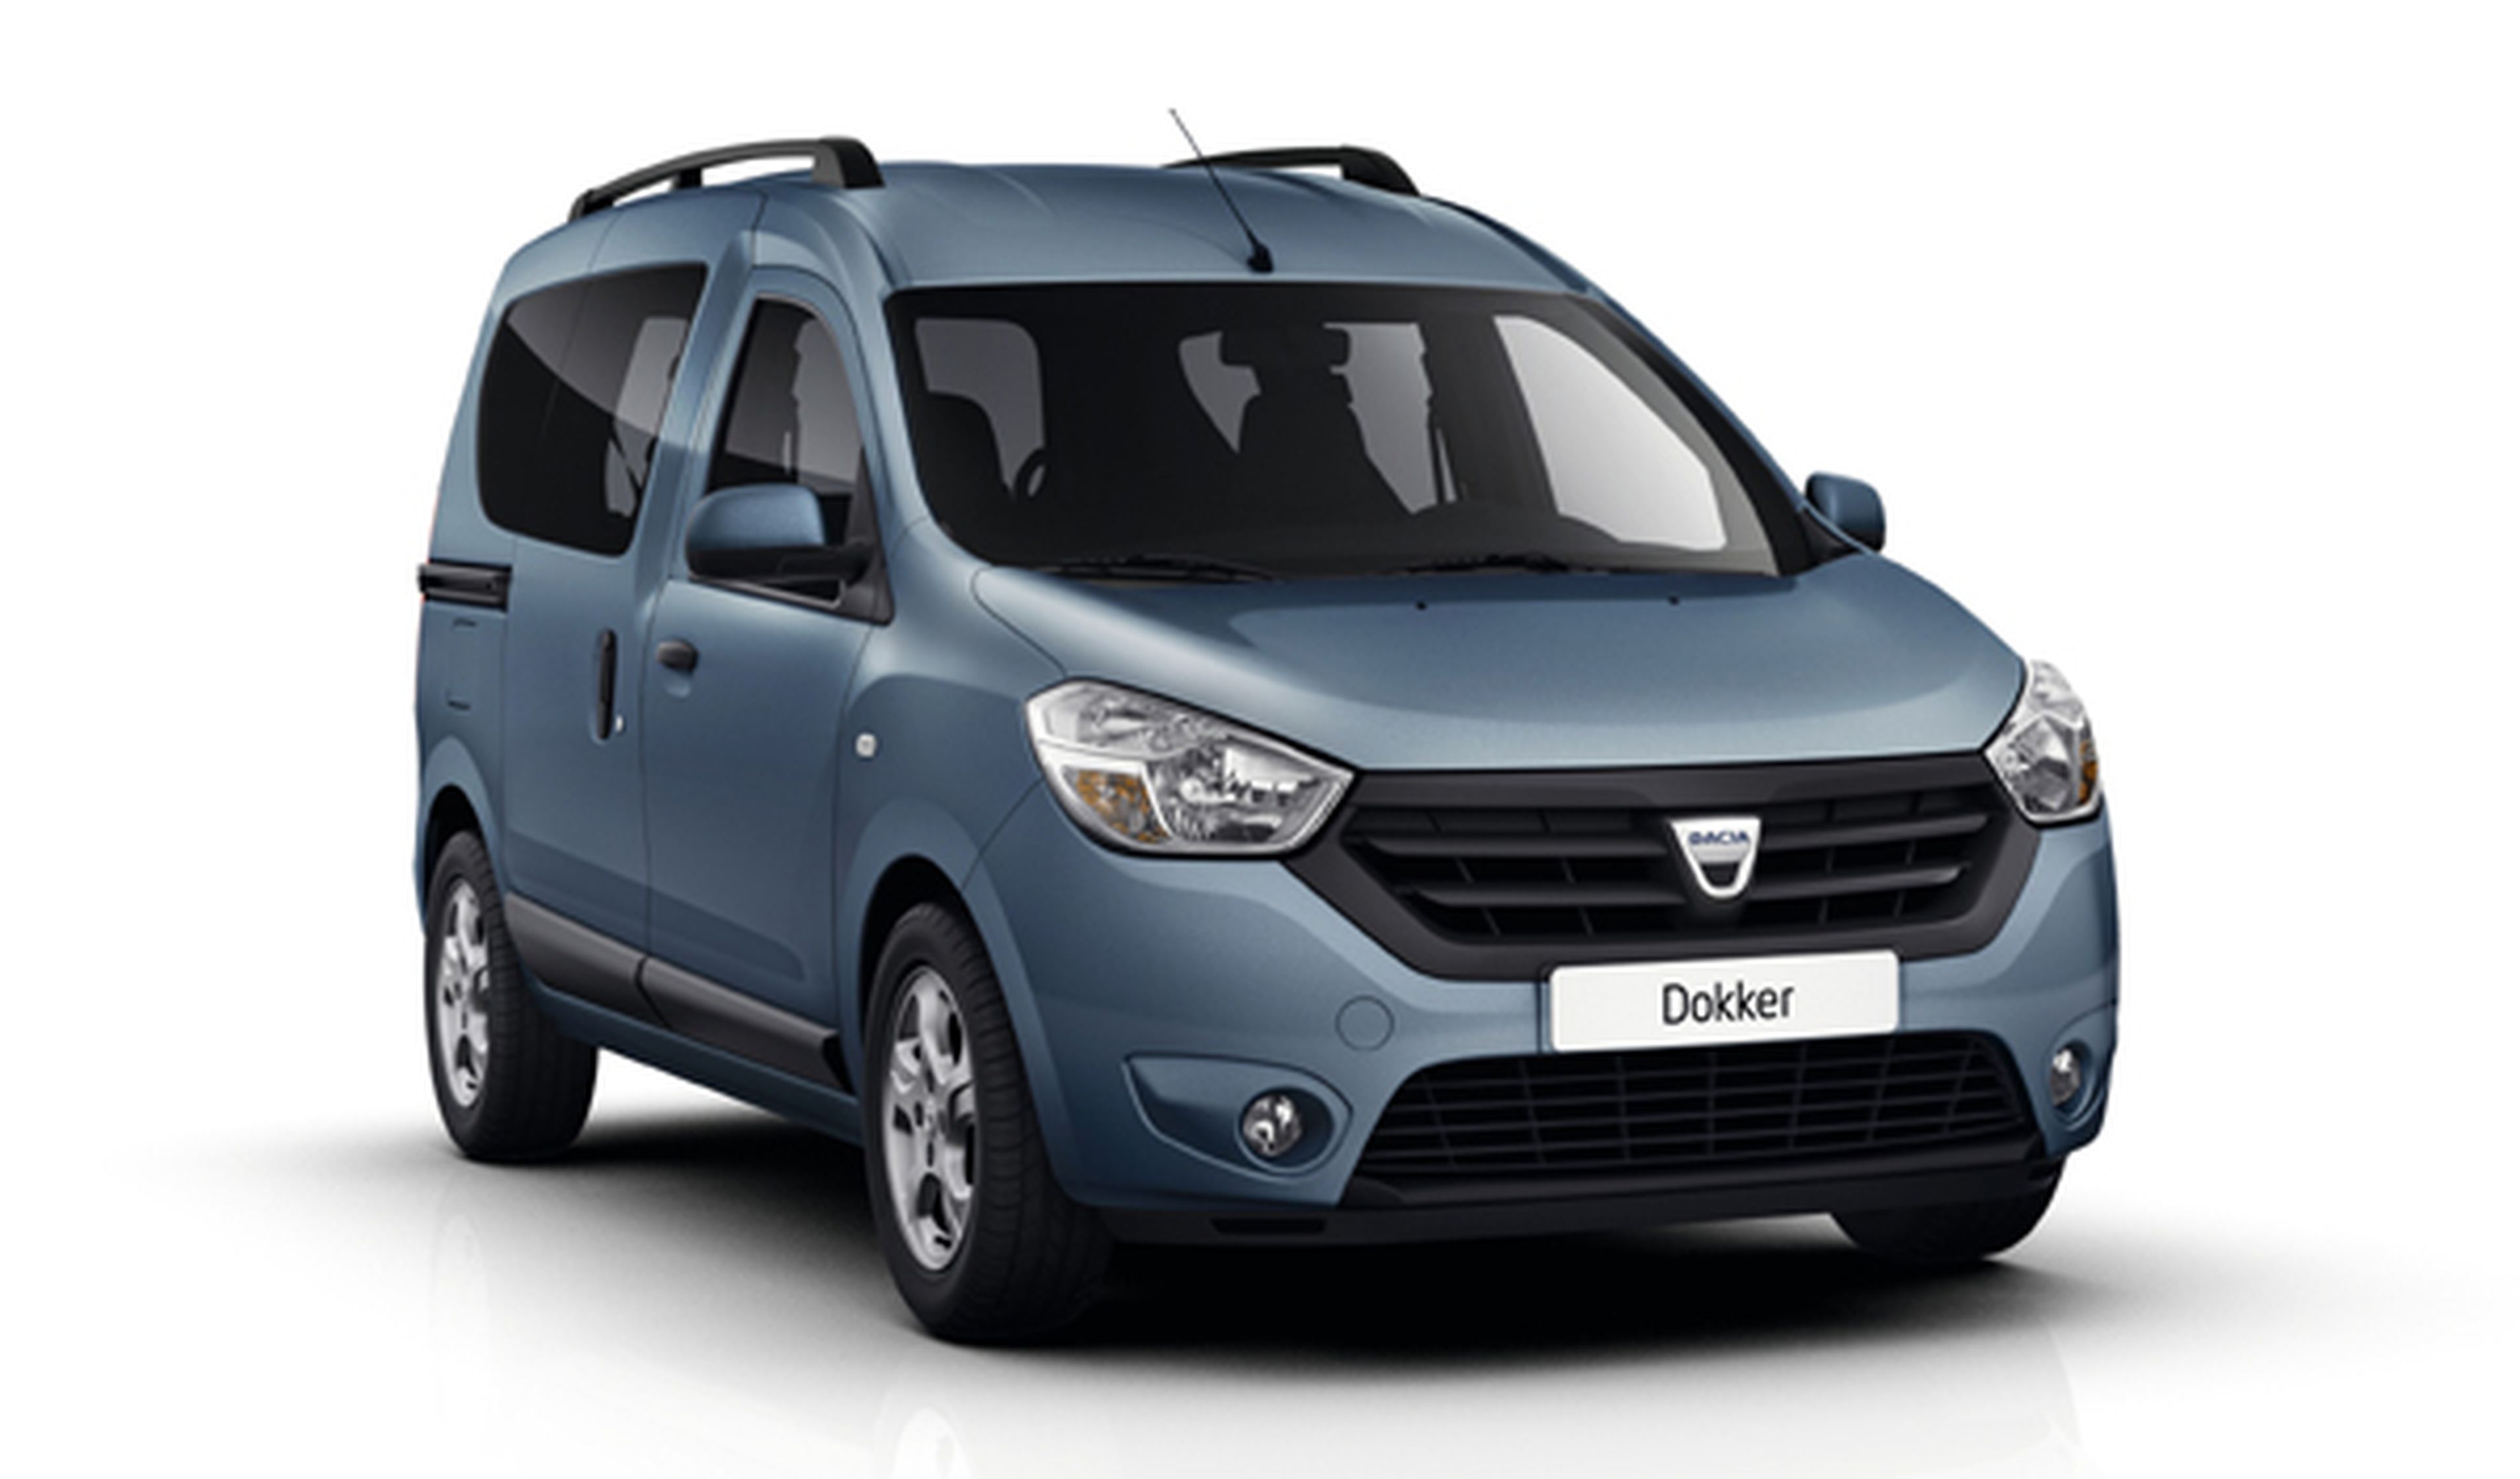 mejores coches nuevos por 7.000 euros Dacia Dokker